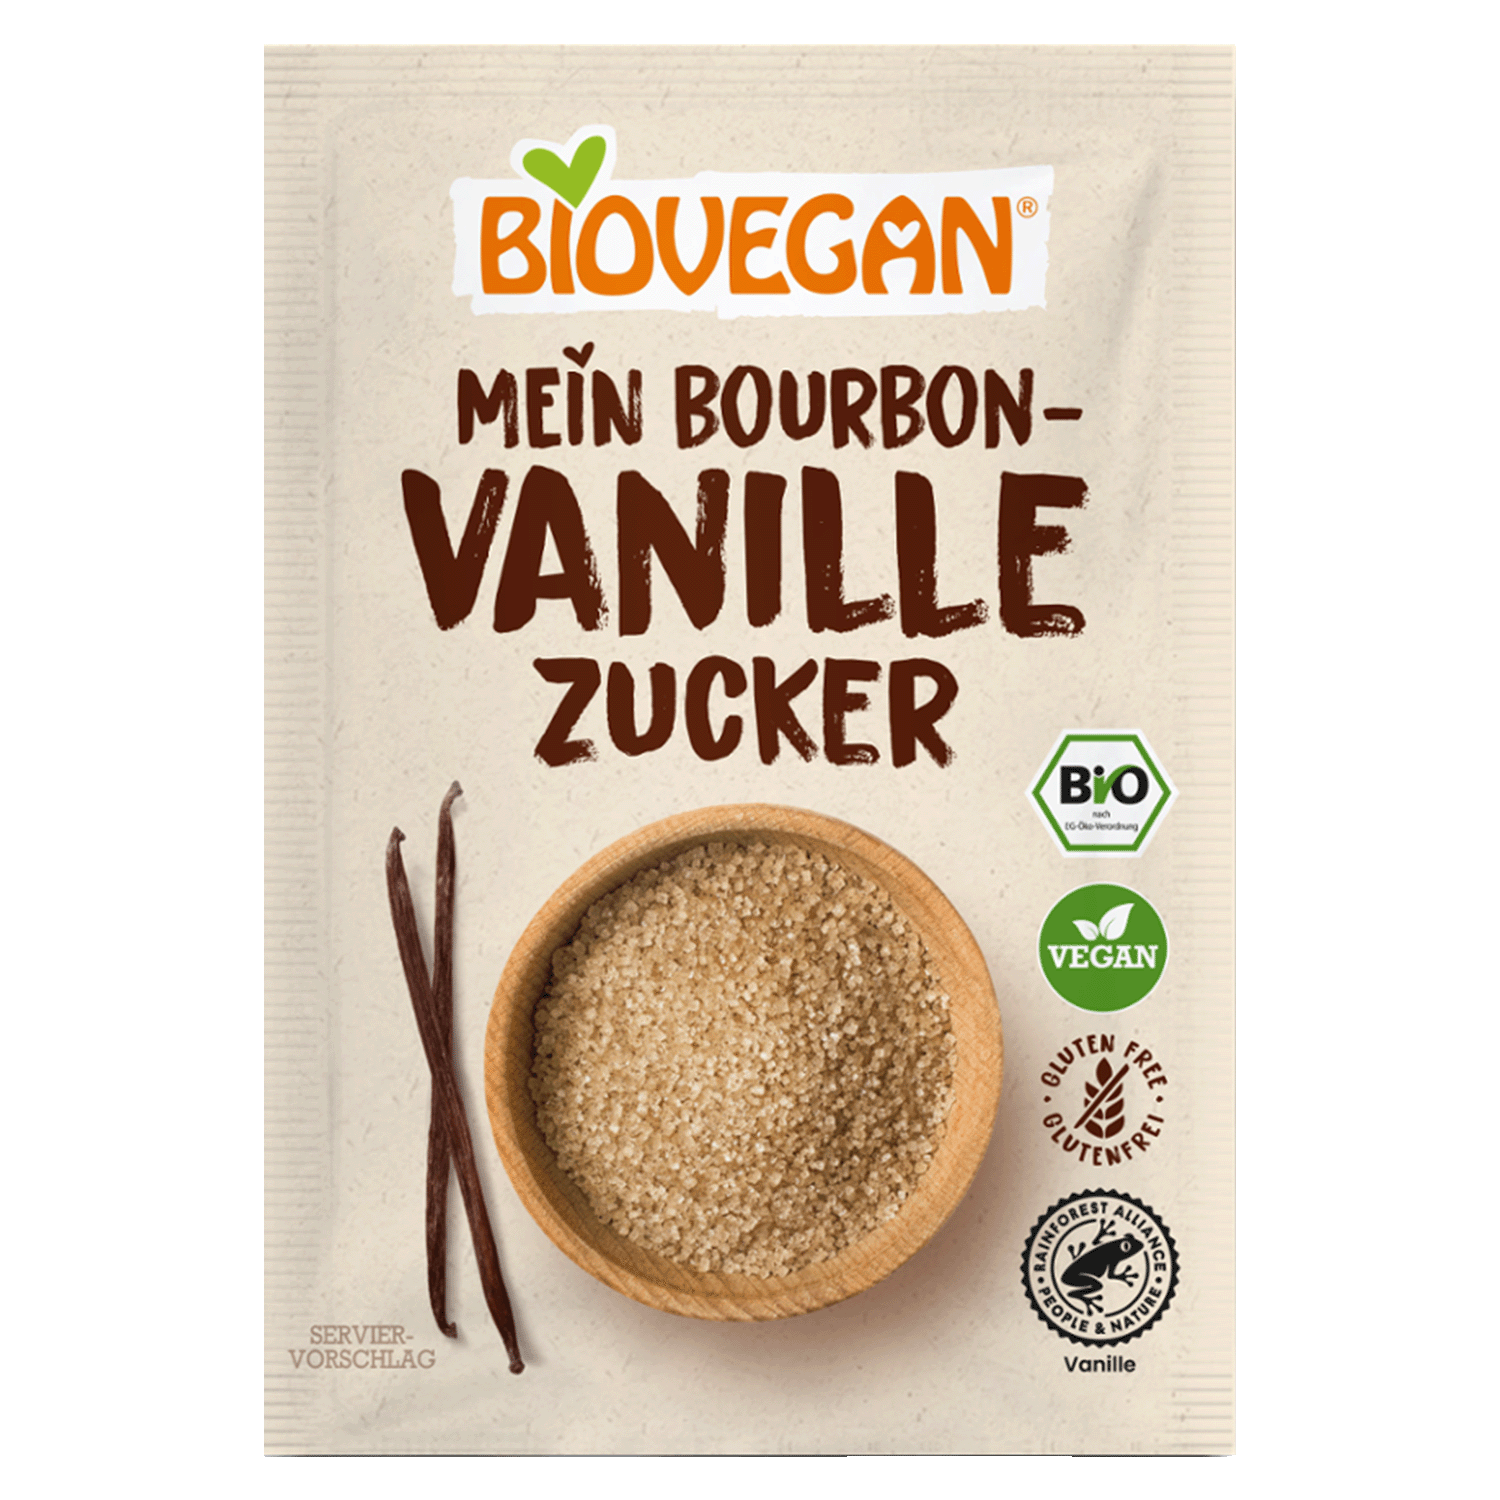 Vanilla Sugar With Bourbon Vanilla, Organic, 32g